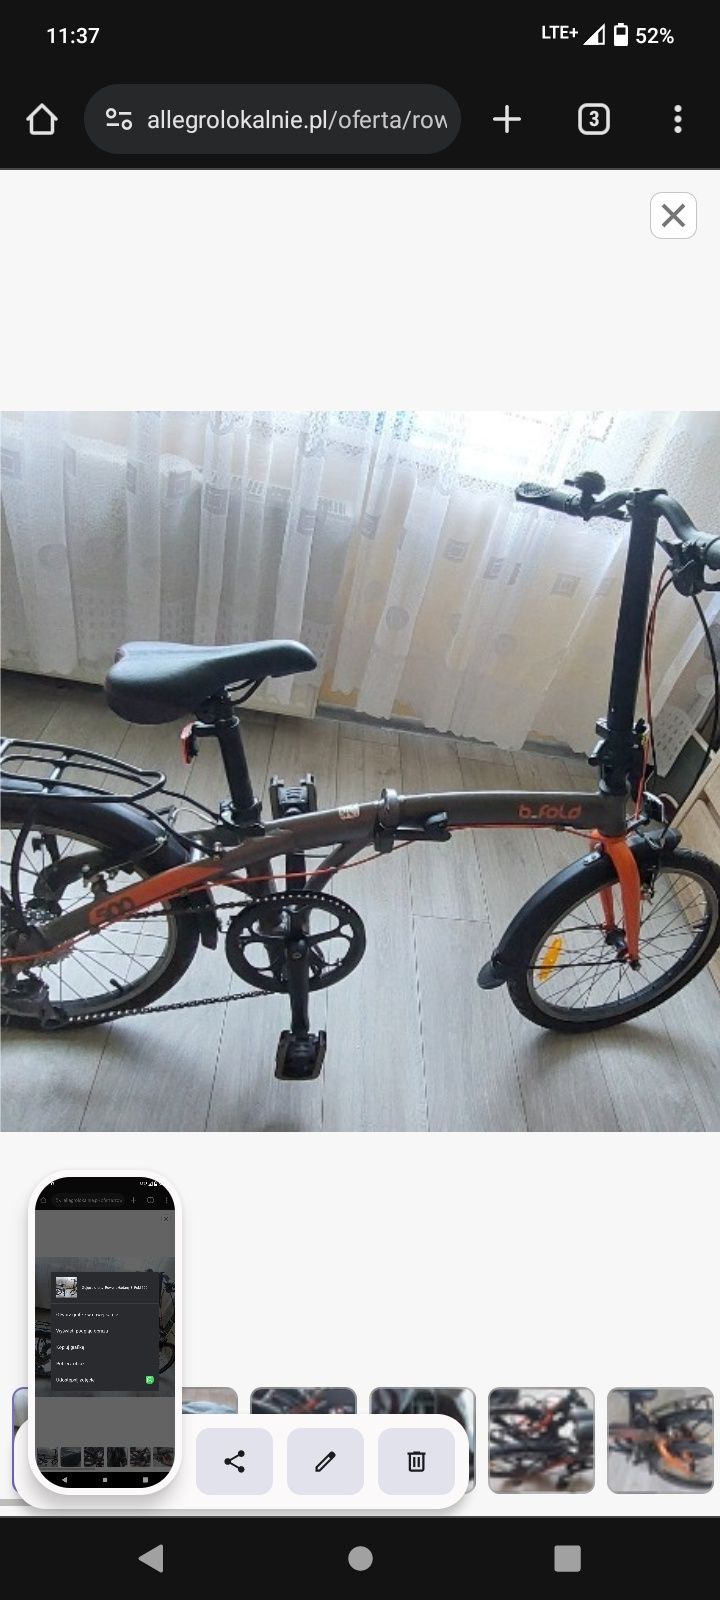 Gigant rower używany